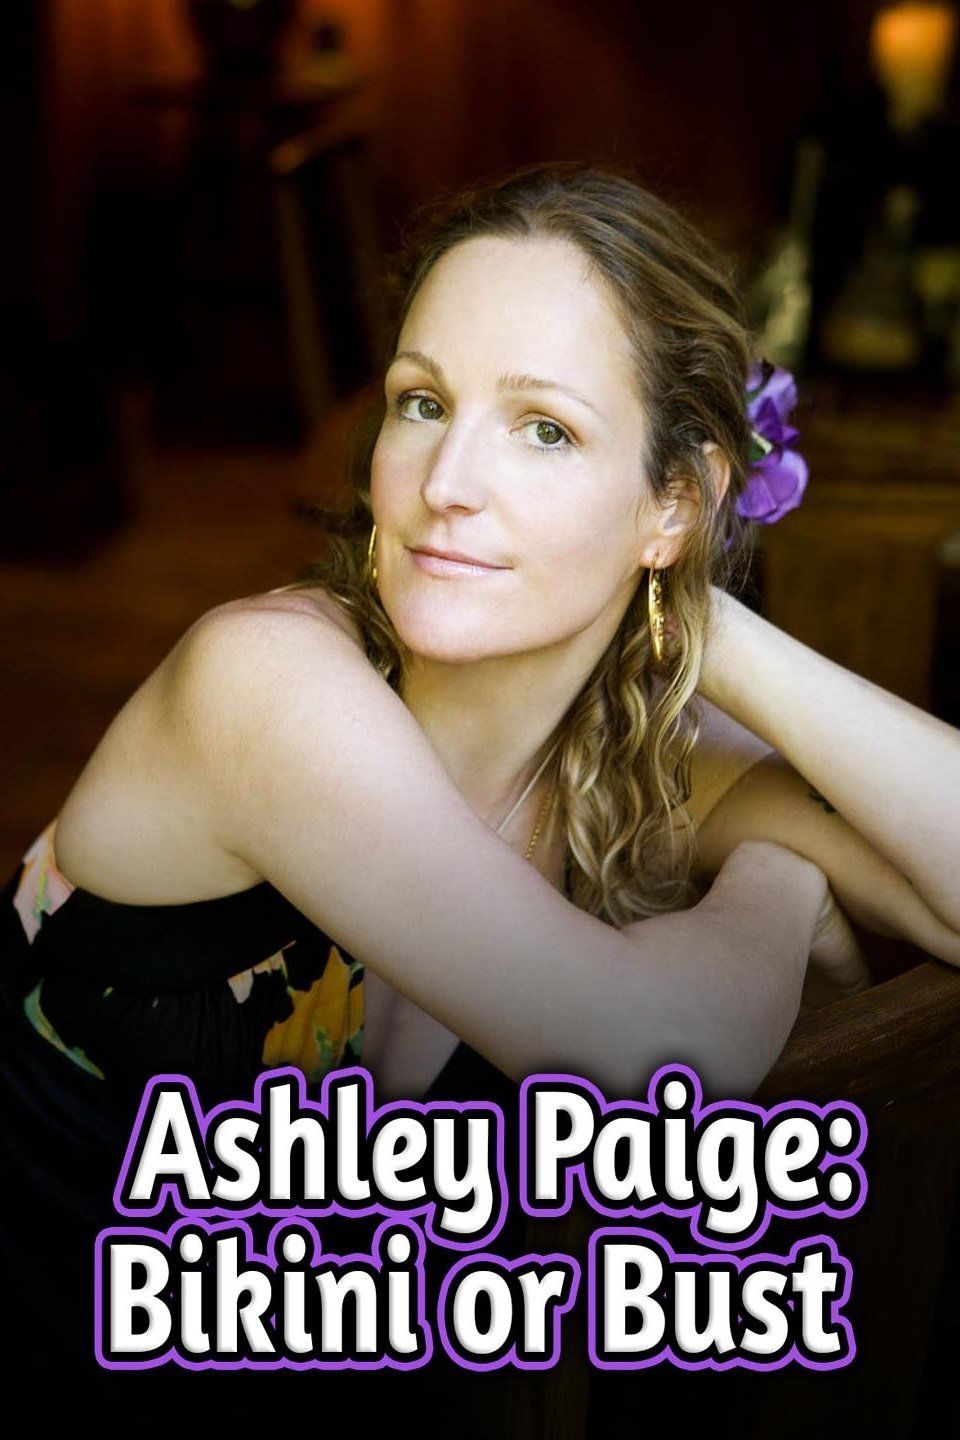 Ashley Paige: Bikini or Bust ne zaman